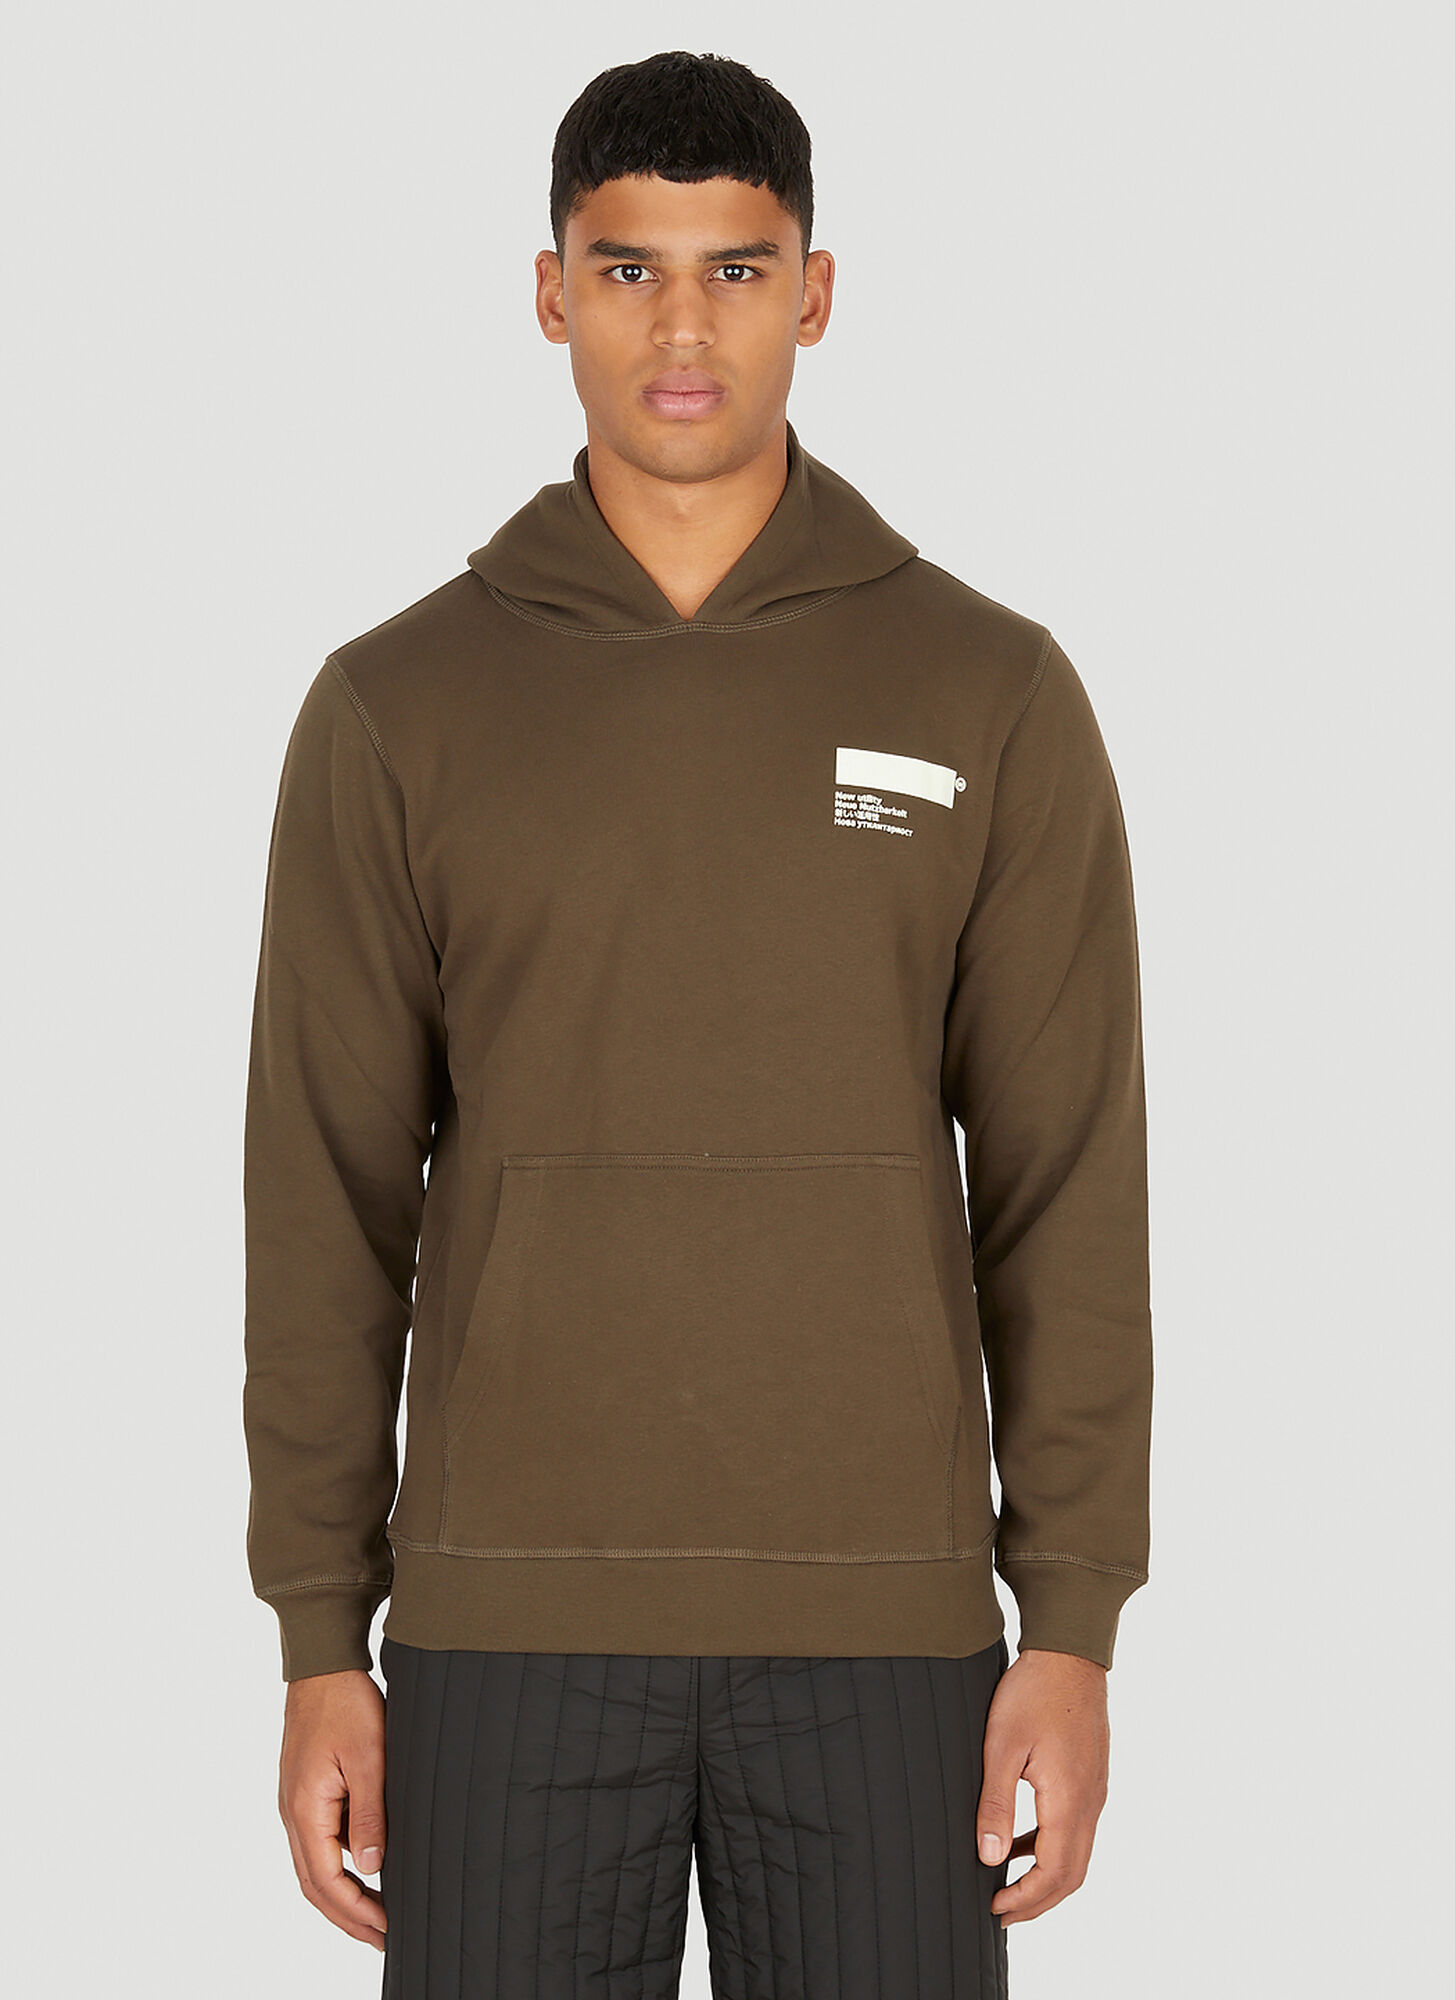 Affxwrks Standardised Hooded Sweatshirt Male Brown